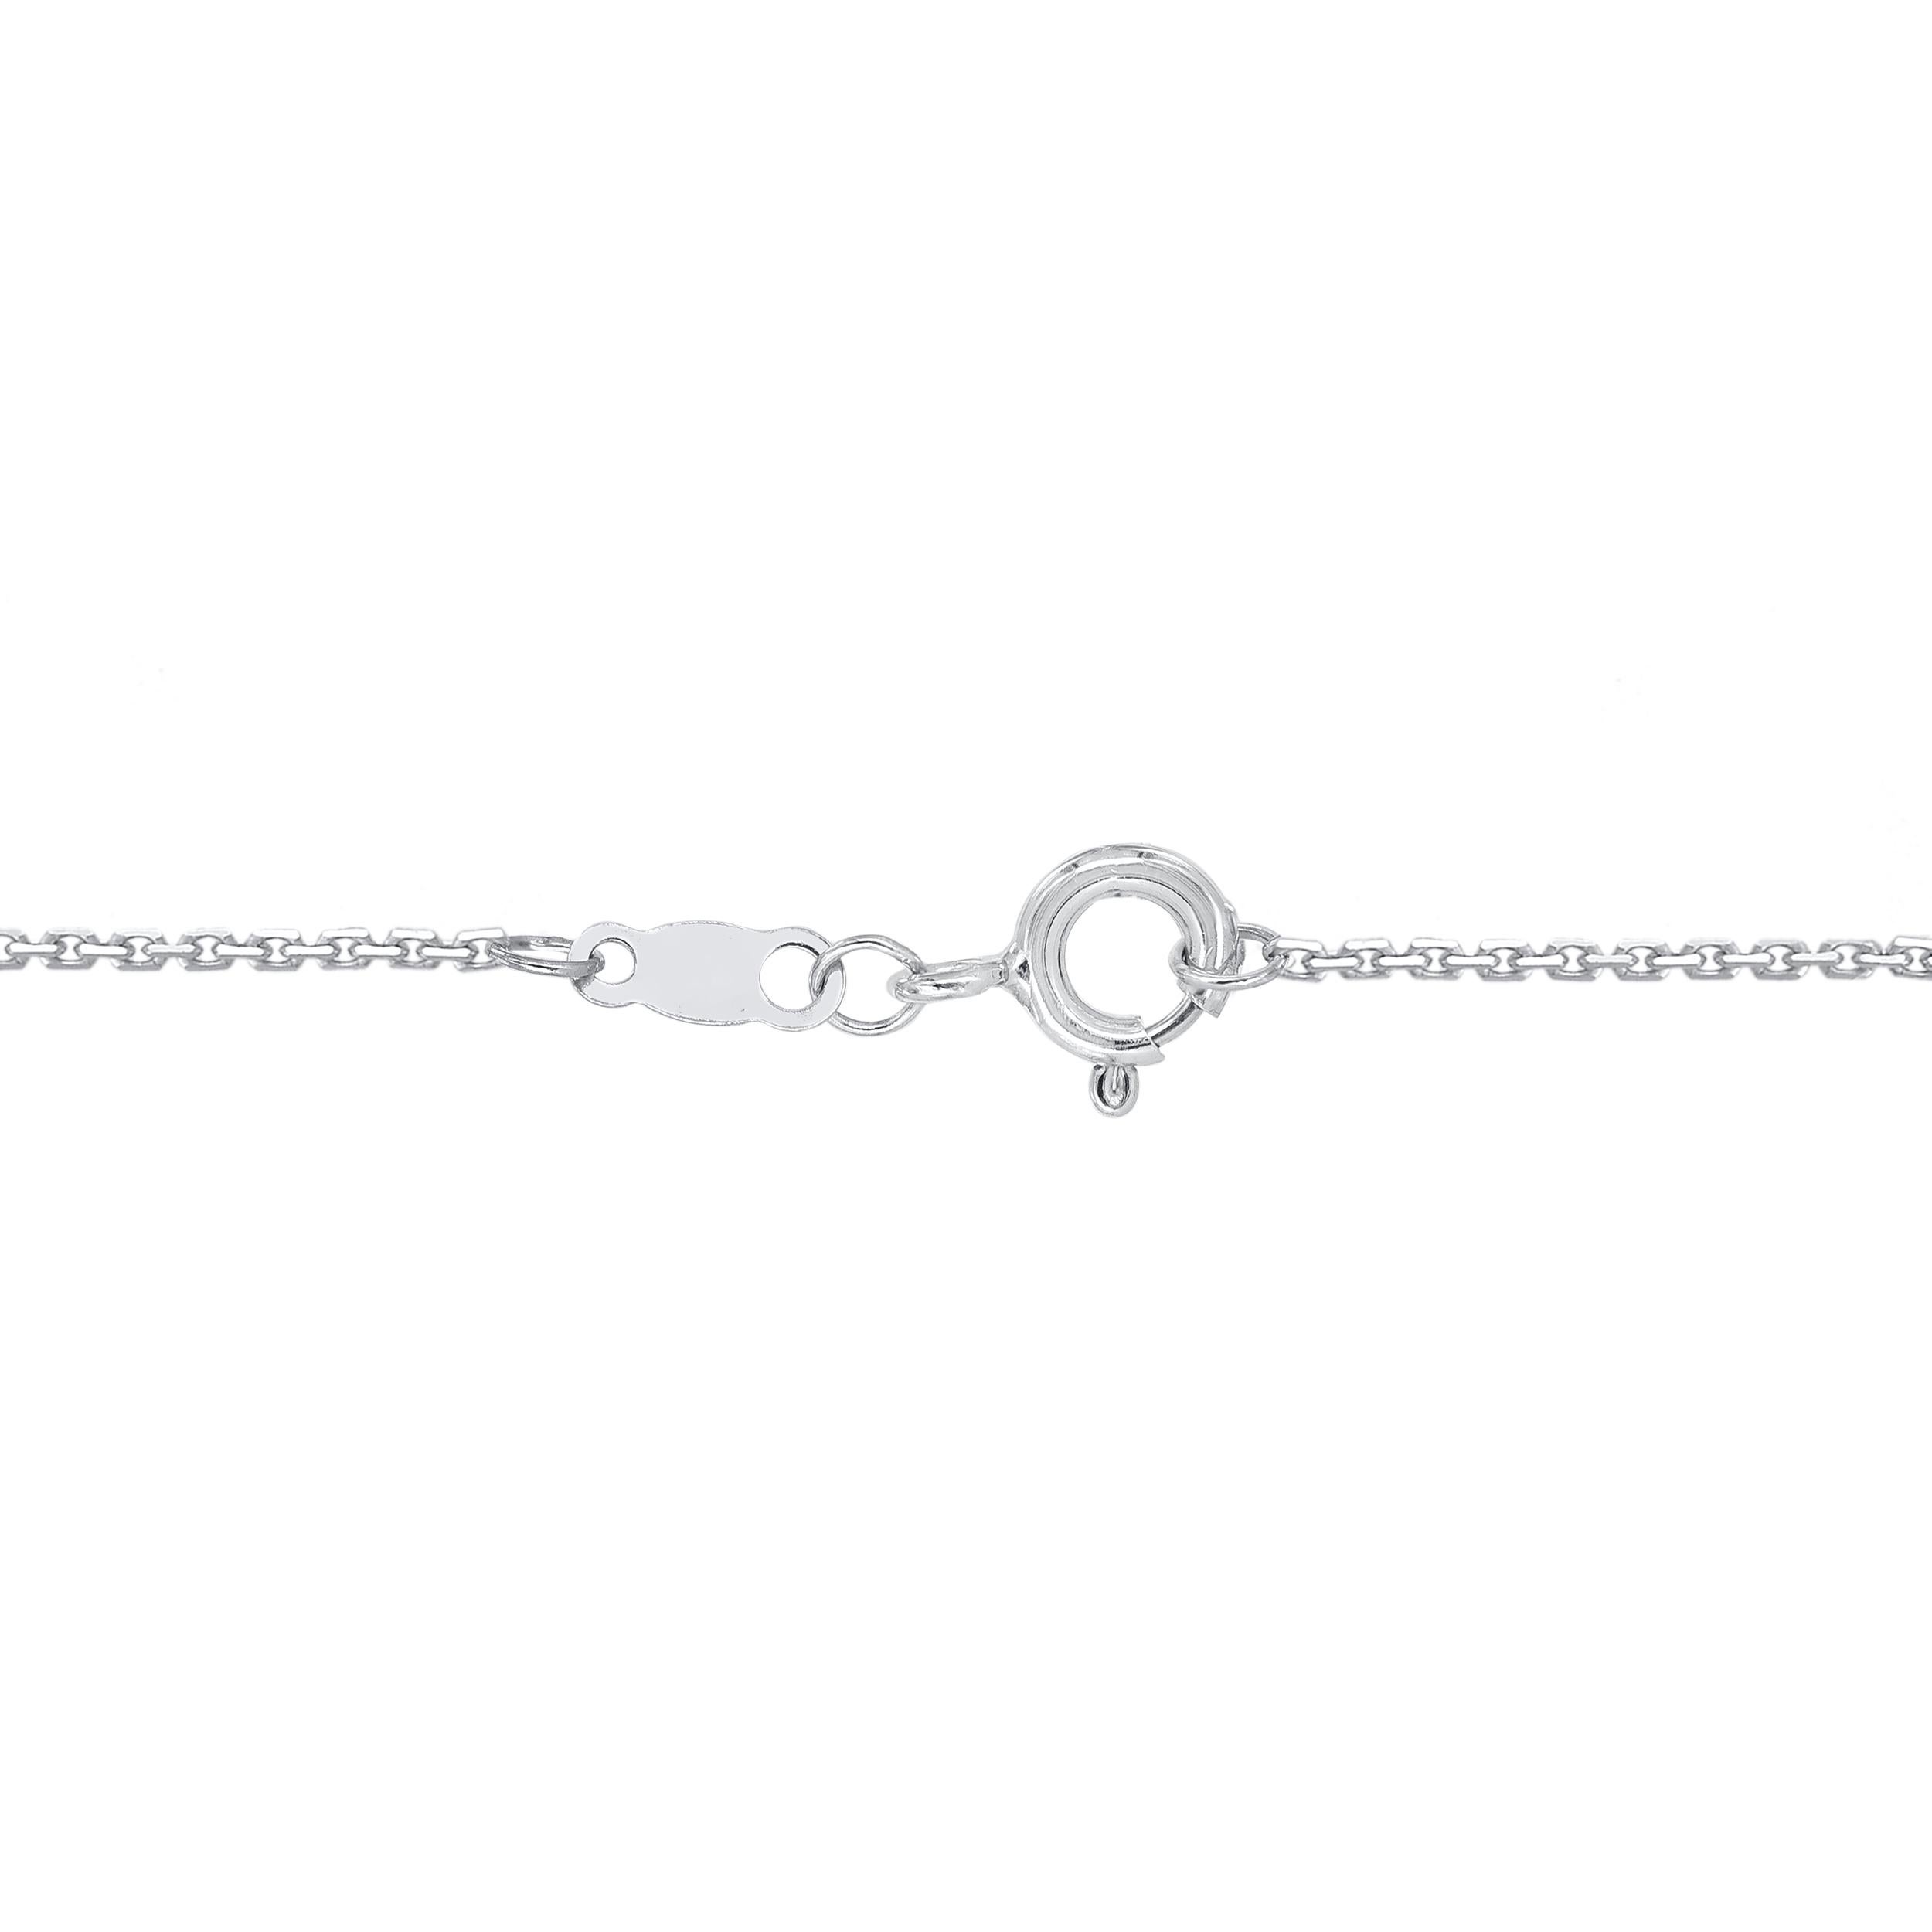 Baguette Cut TJD 0.50 Carat Natural Diamond 14 Karat White Gold Circle Pendant Necklace For Sale